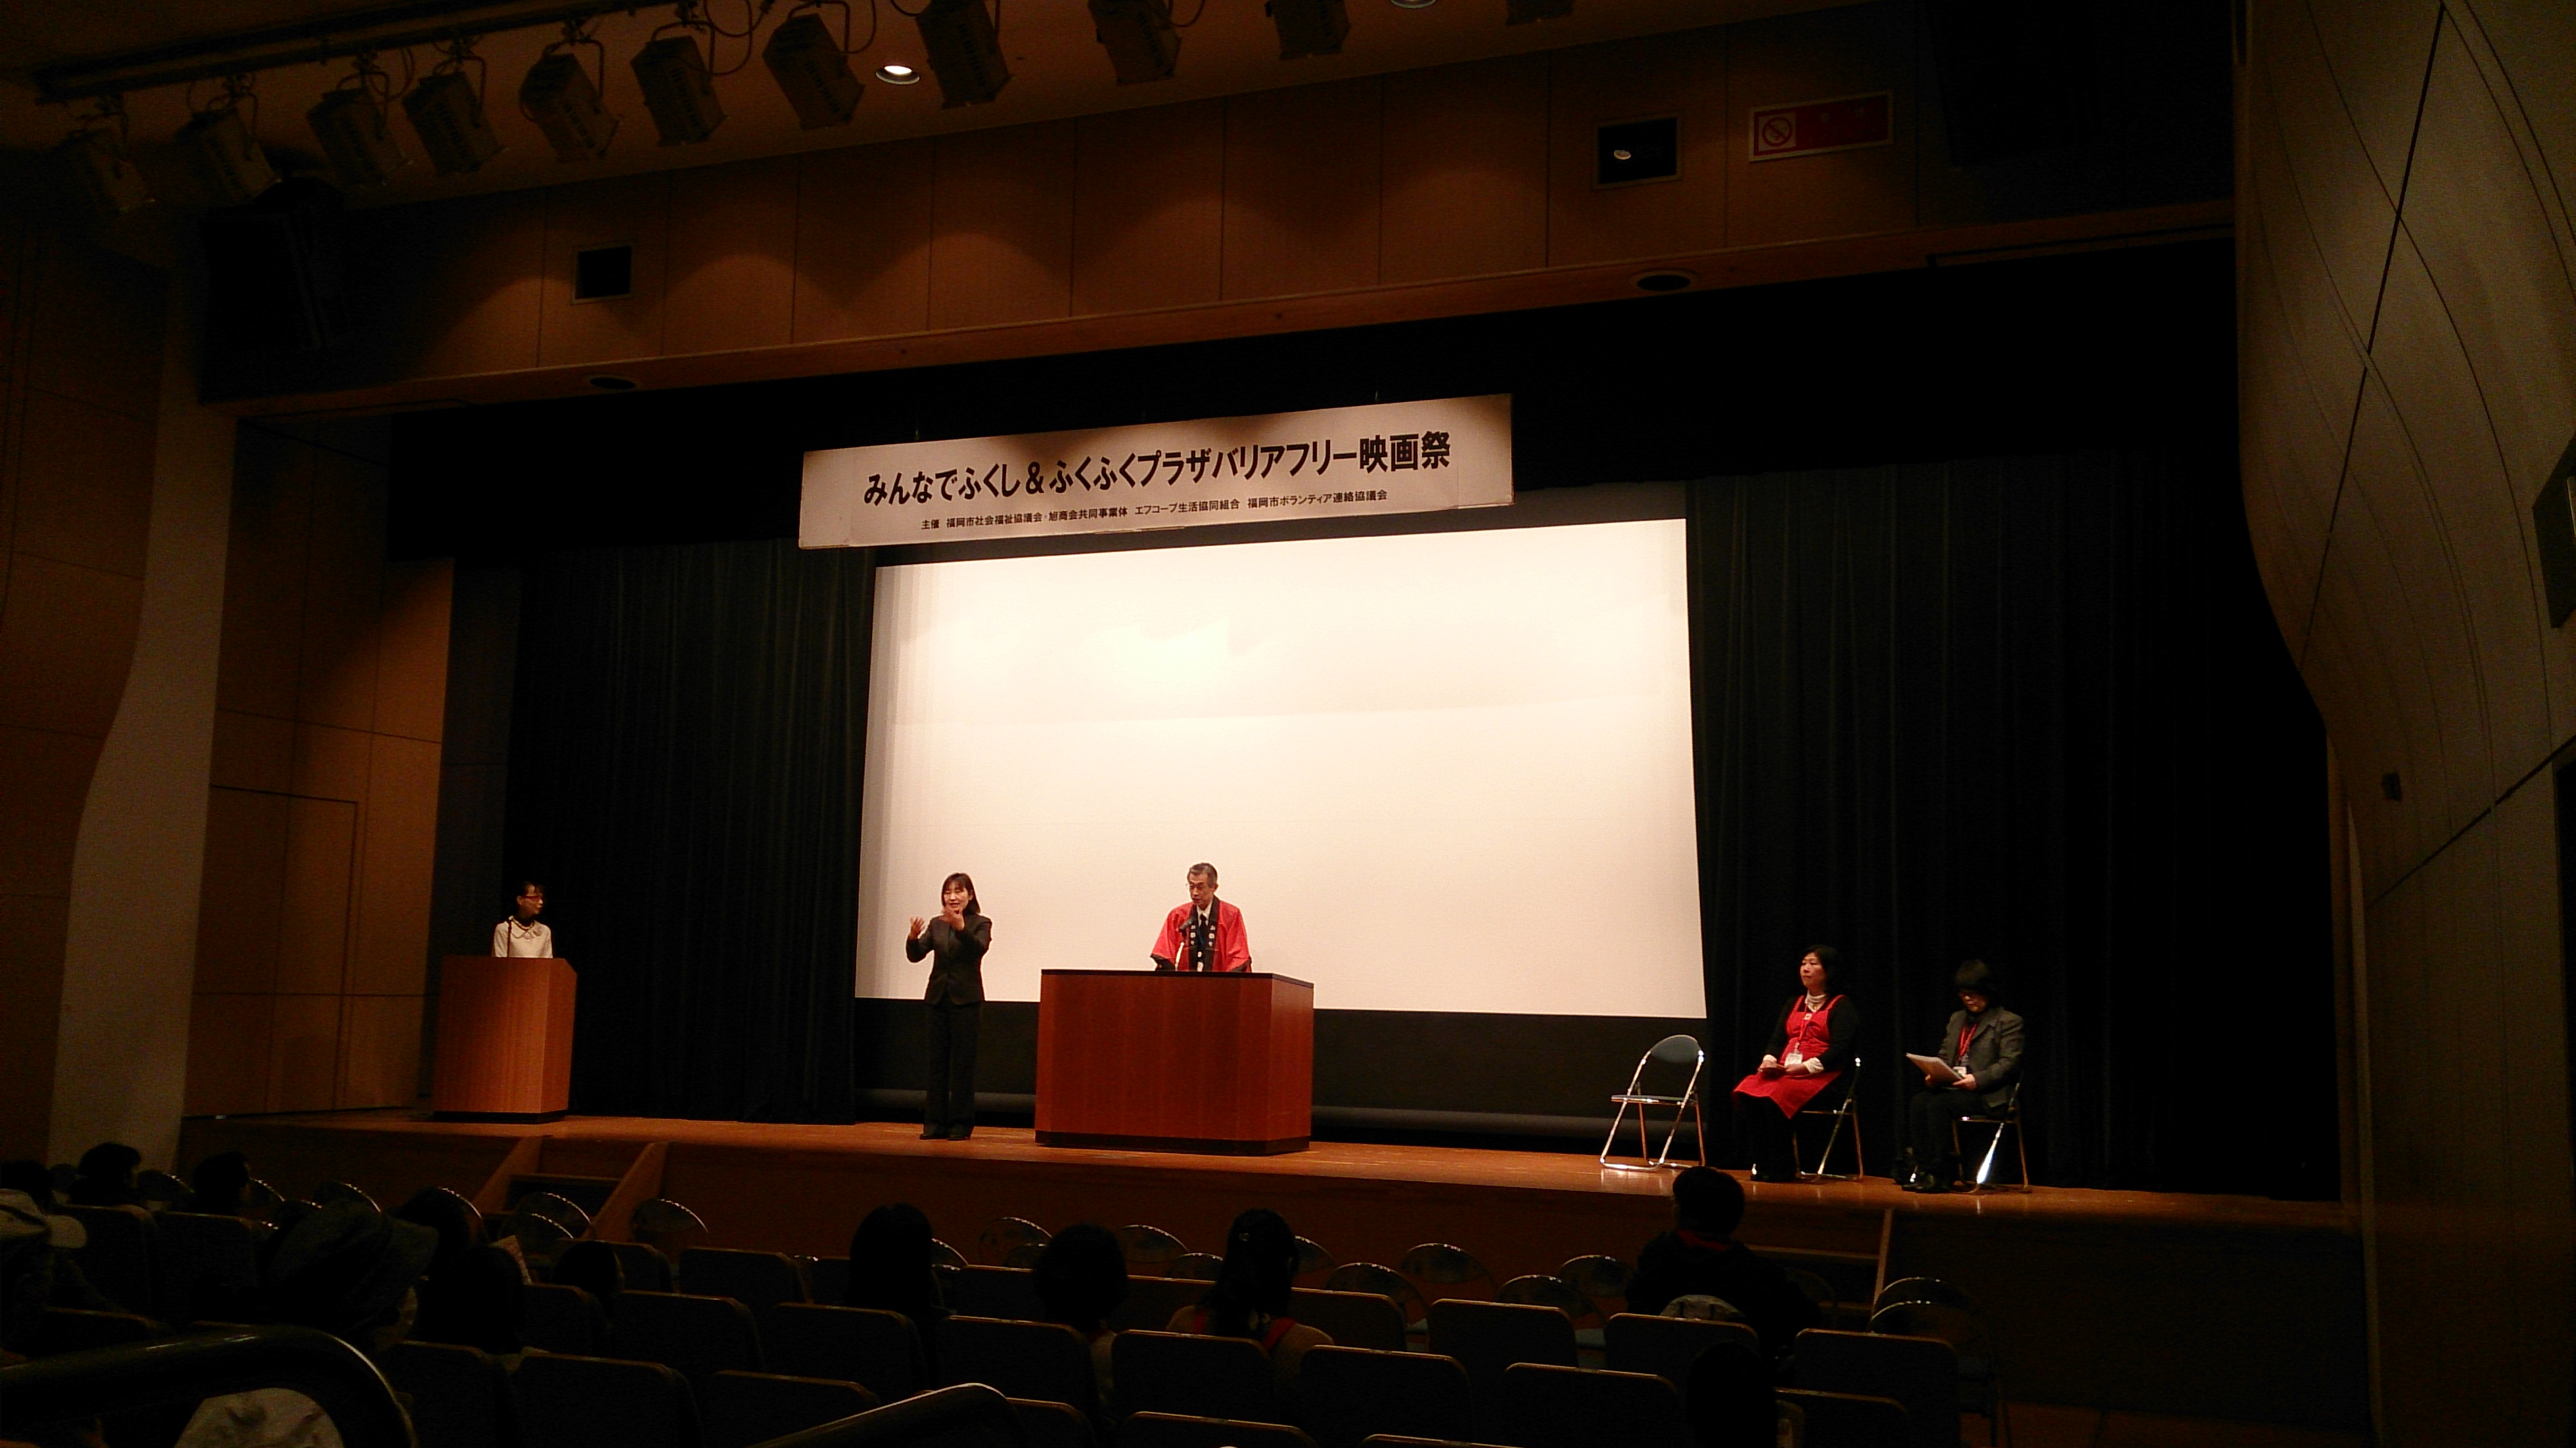 みんなでふくし ふくふくプラザ バリアフリー映画祭 を開催致しました 株式会社 旭商会 福岡県の総合ビル管理 ビルメンテナンス 建物管理